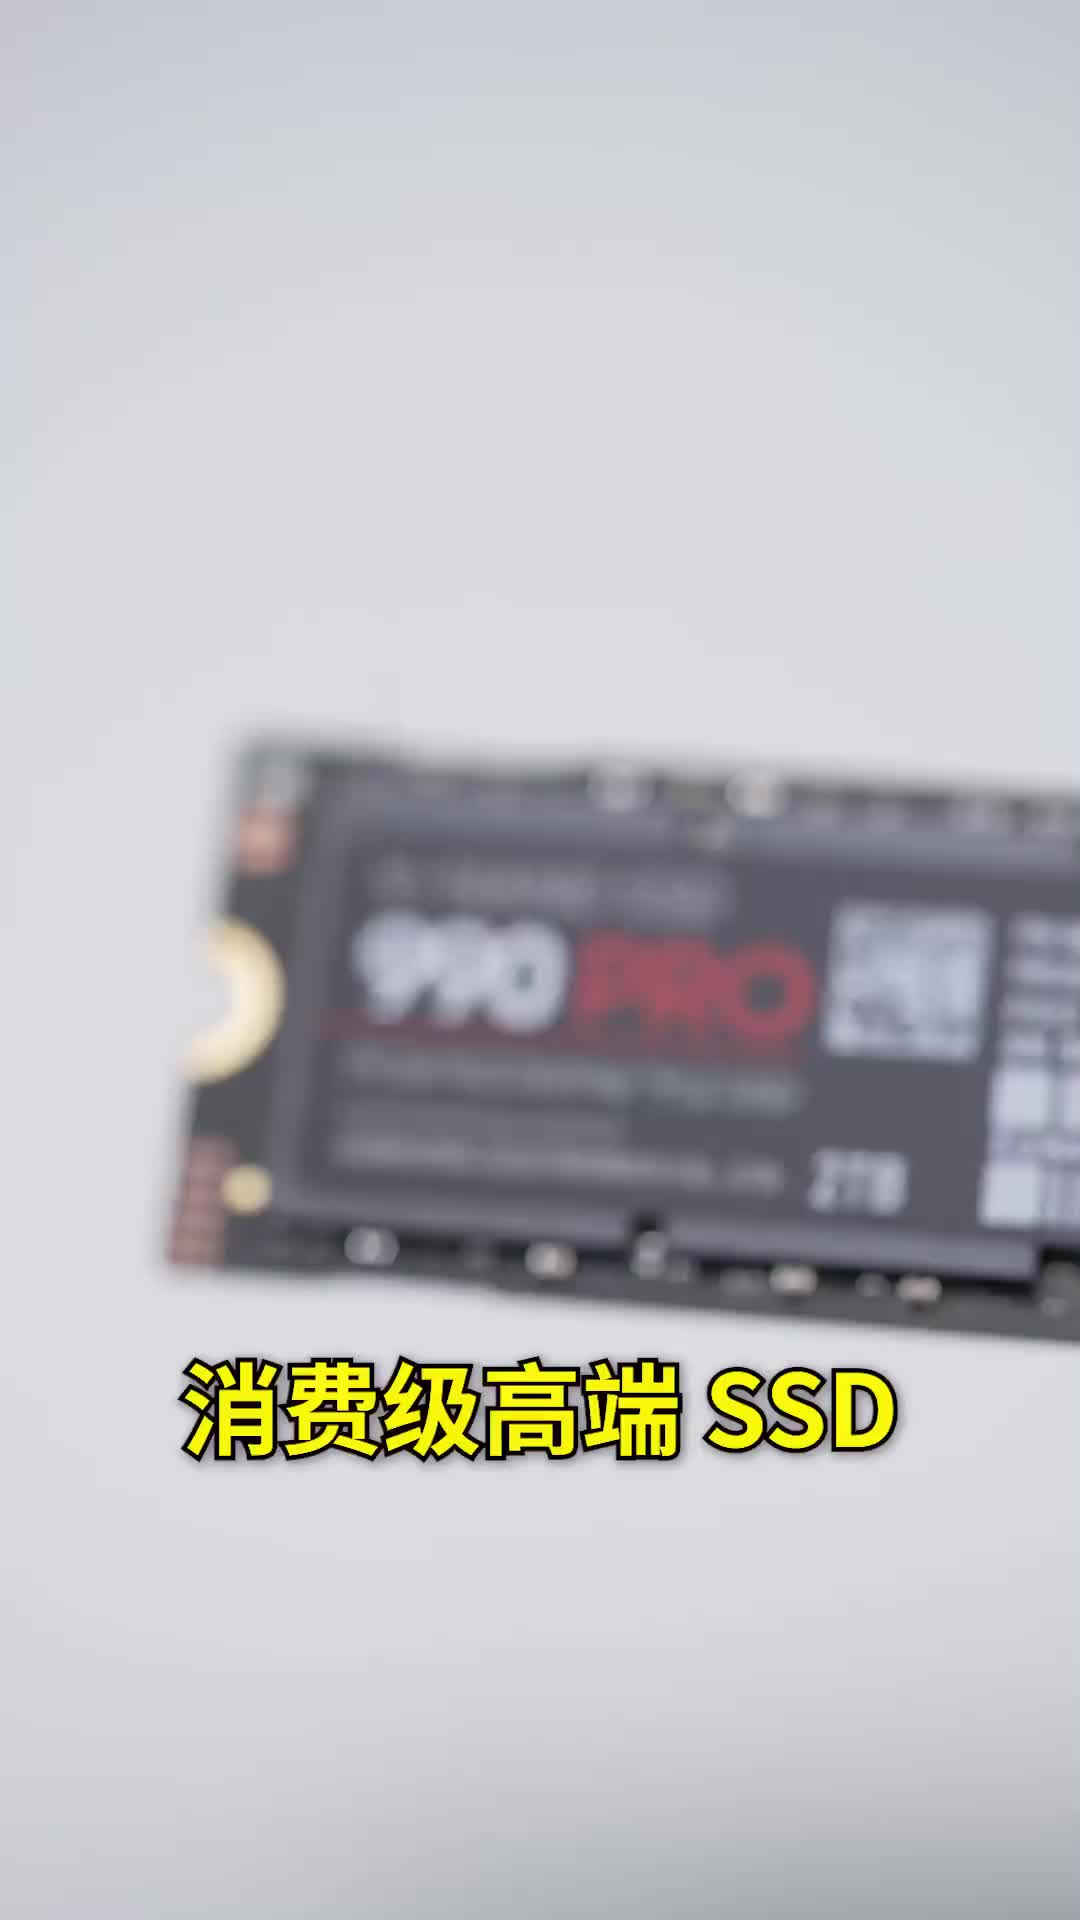 超能打的三星固态硬盘990 Pro上机实测